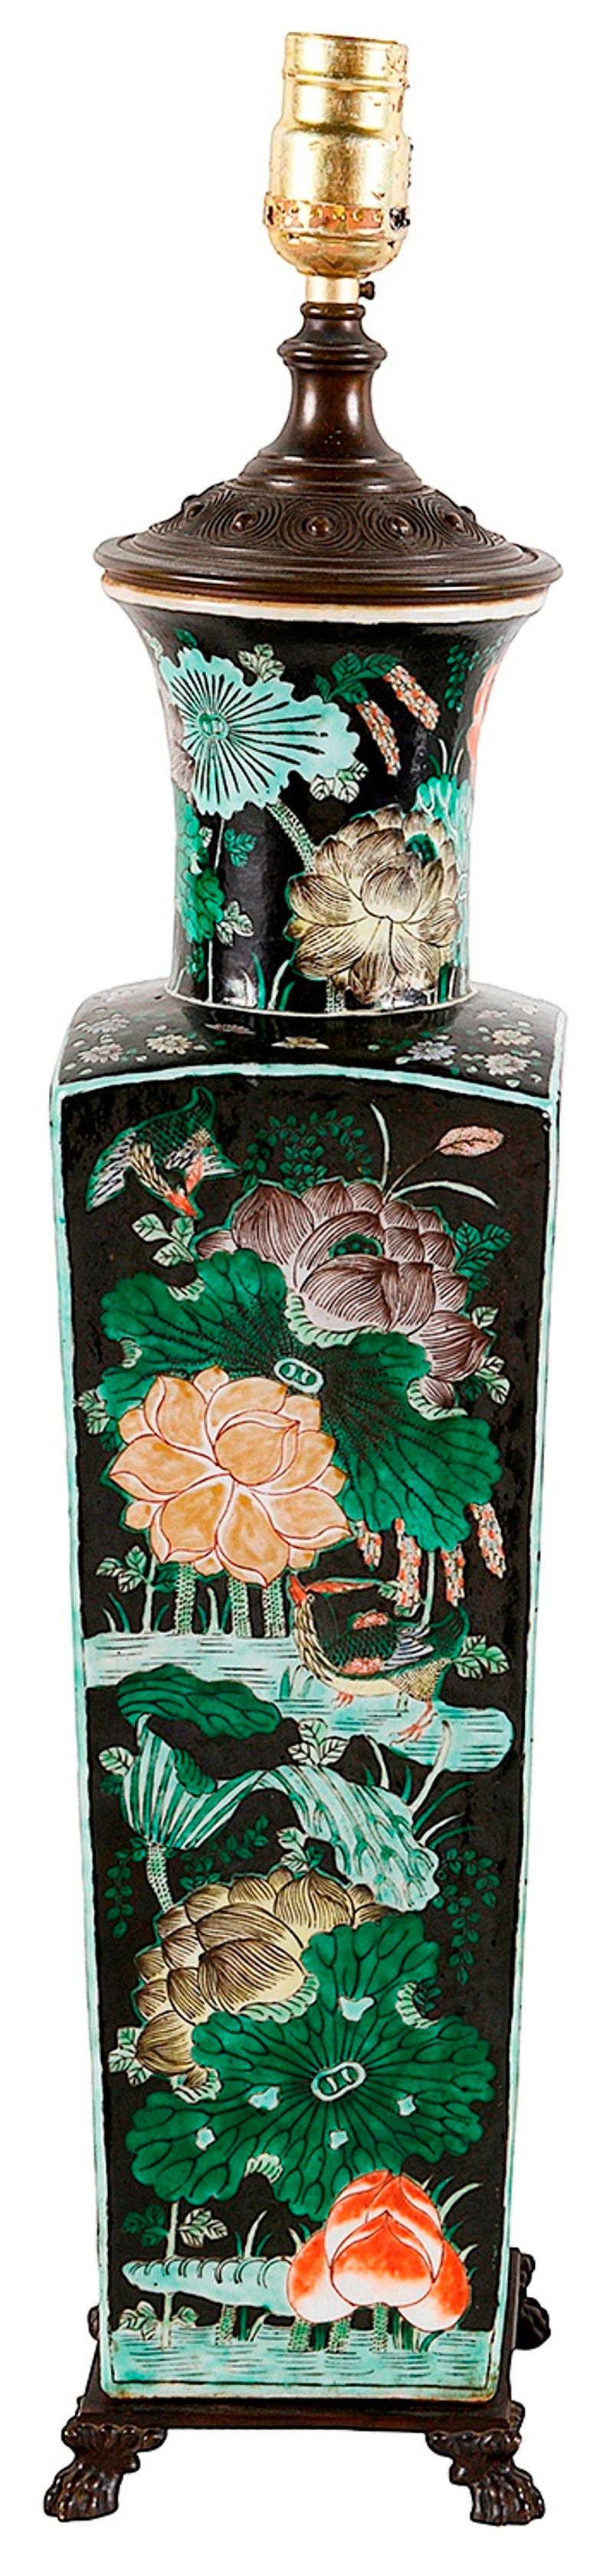 Vase / lampe en porcelaine de la Famille Noire chinoise de bonne qualité du 19ème siècle, présentant de merveilleuses fleurs exotiques peintes à la main sur un fond noir, une forme effilée montée sur des pieds à griffes en bronze. Mesures : 53cm (